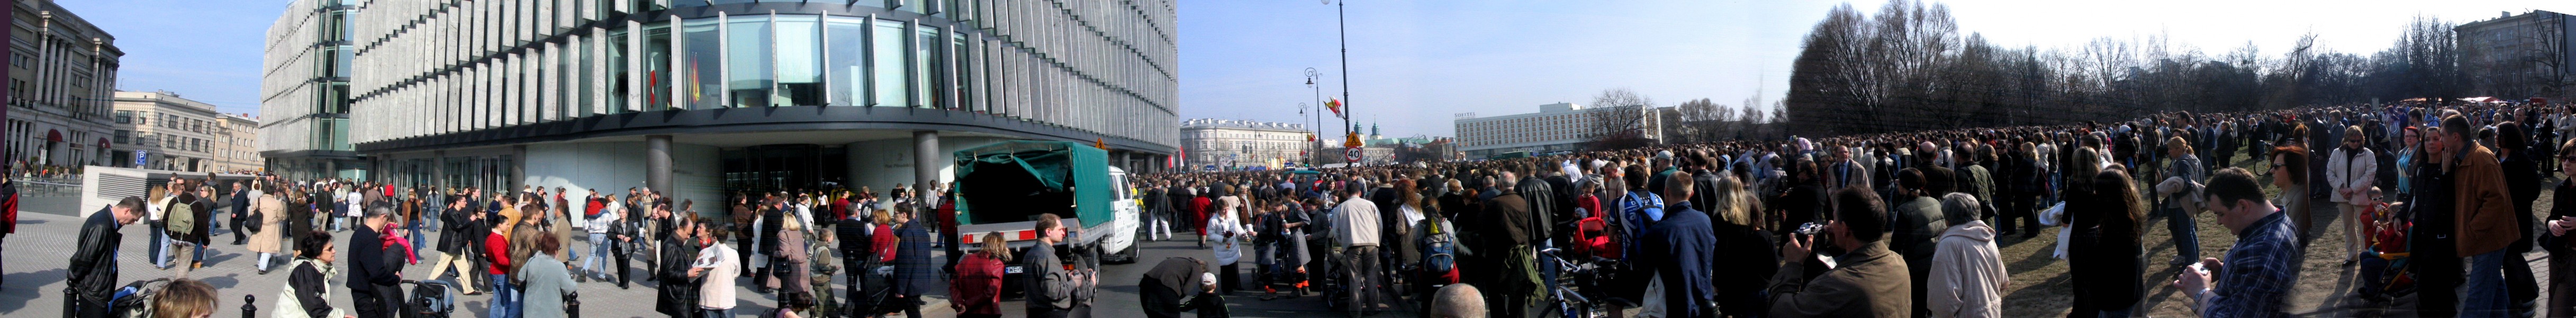 Plac Piłsudskiego, po śmierci Papieża - 3 Kwietnia 2005